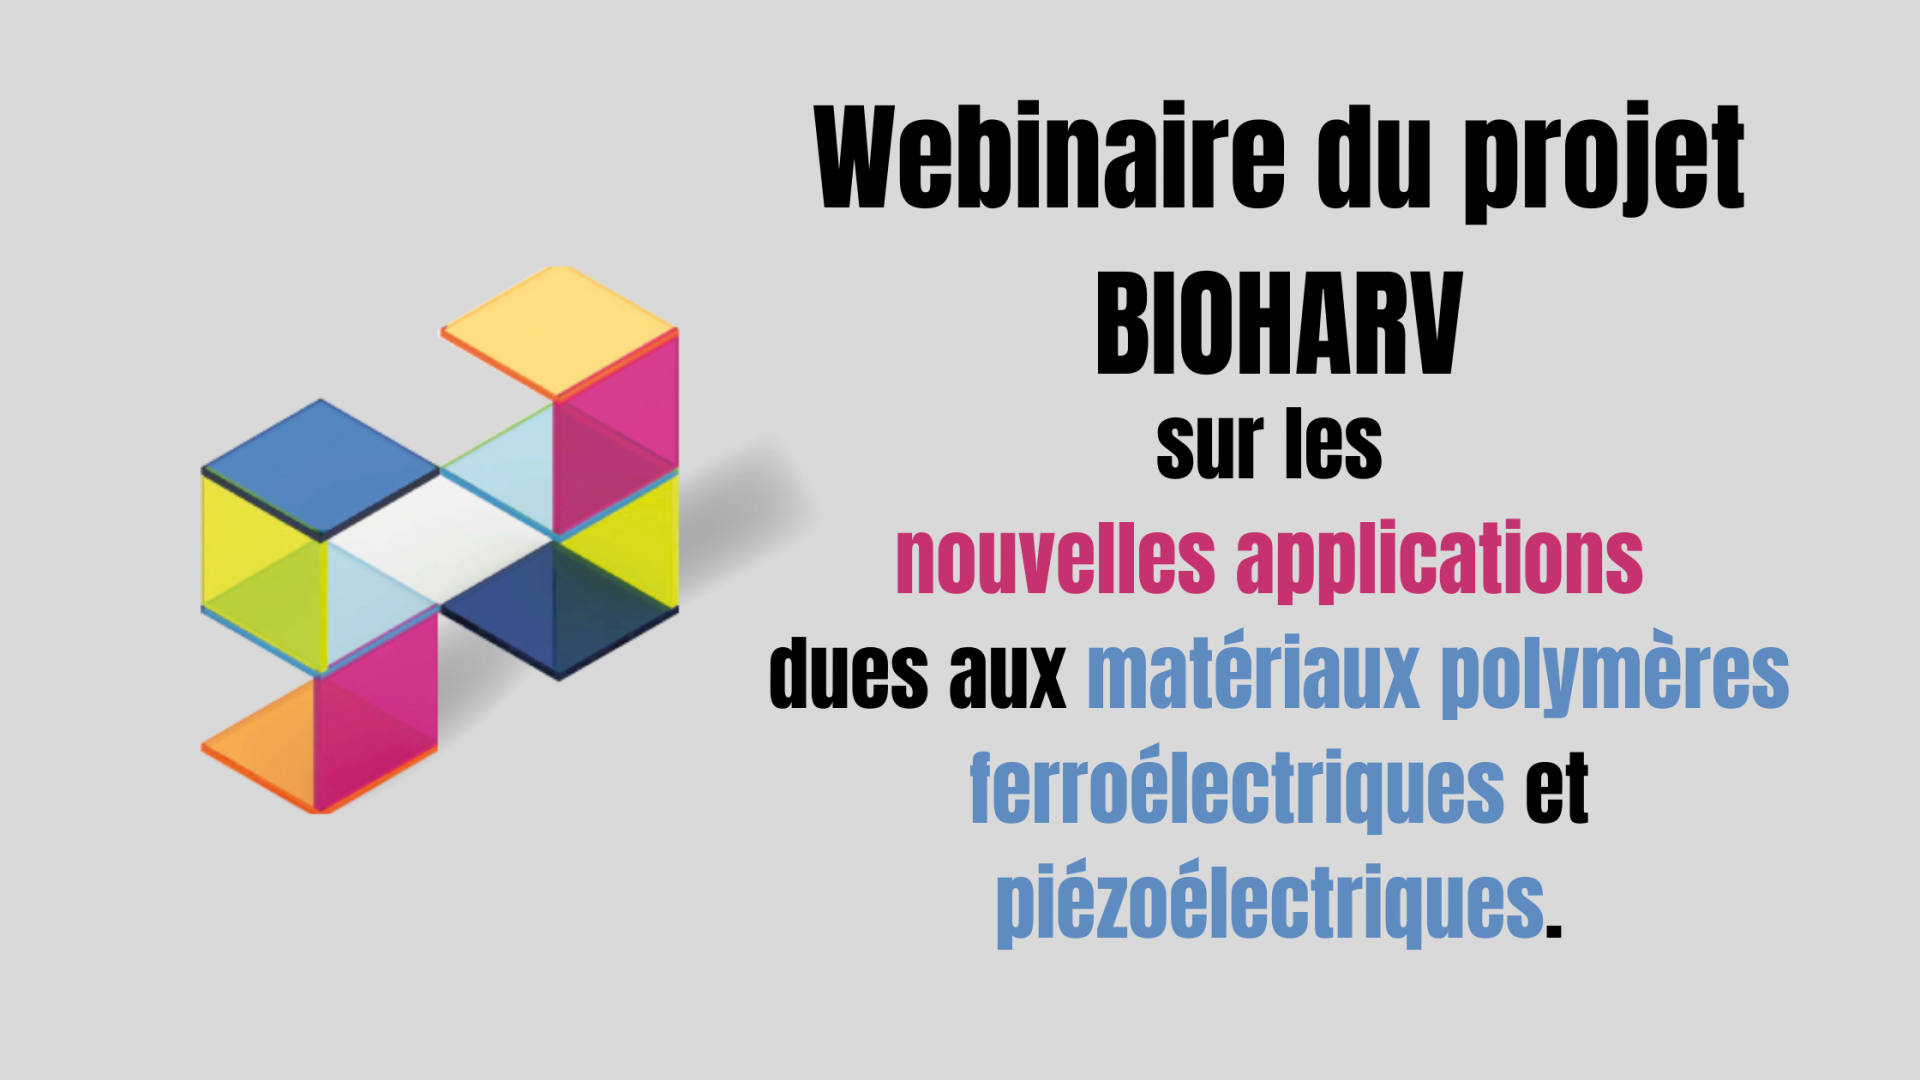 Le projet eutopéen BIOHARV organise un webinaire sur les applications dues aux matériaux polymères ferroélectriques et piézoélectriques